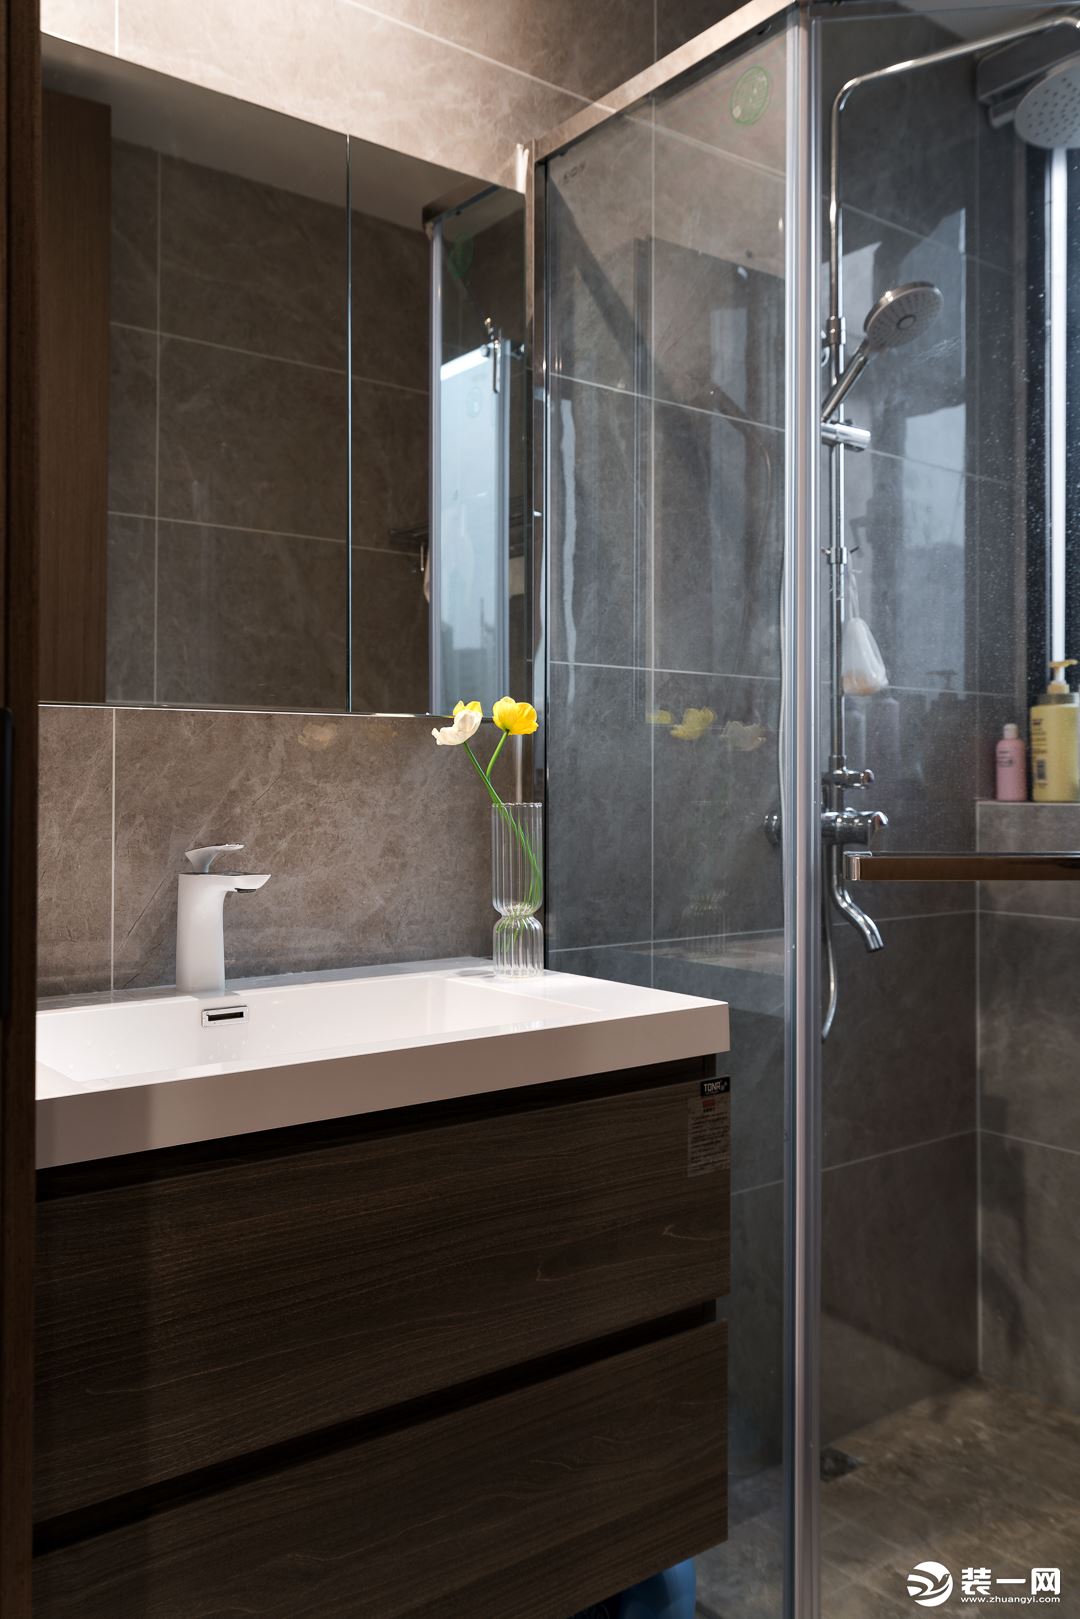 卫浴空间采用了气质灰调，搭配温润的木质柜体，不动声色流露出现代都市摩登感。